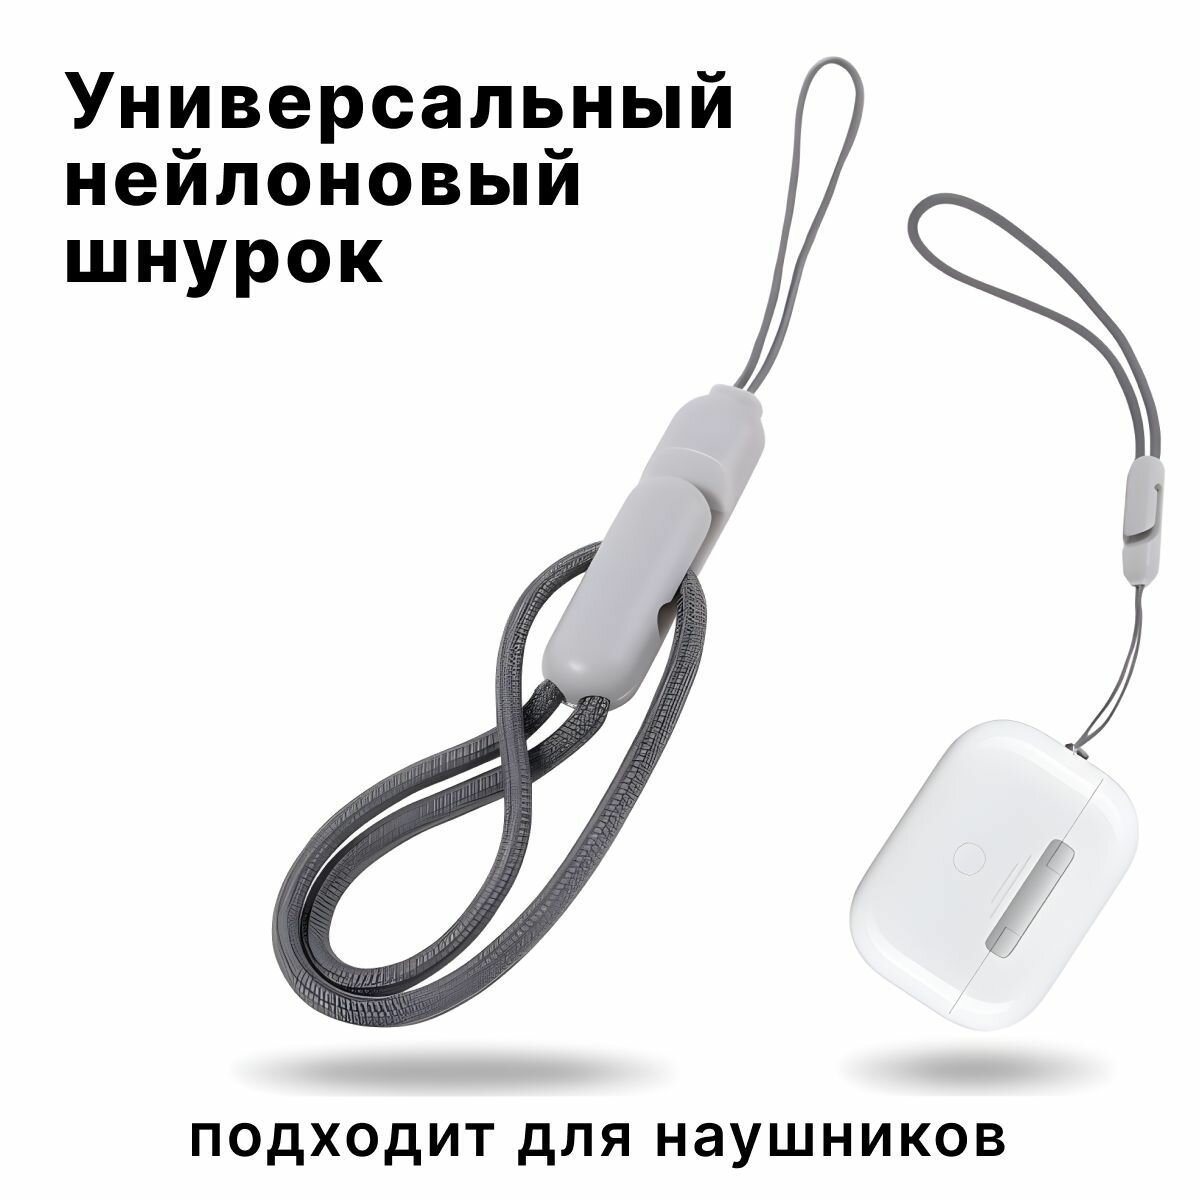 Универсальный нейлоновый шнурок с карабином для телефонов ключей флешек и наушников шнурок петля на руку